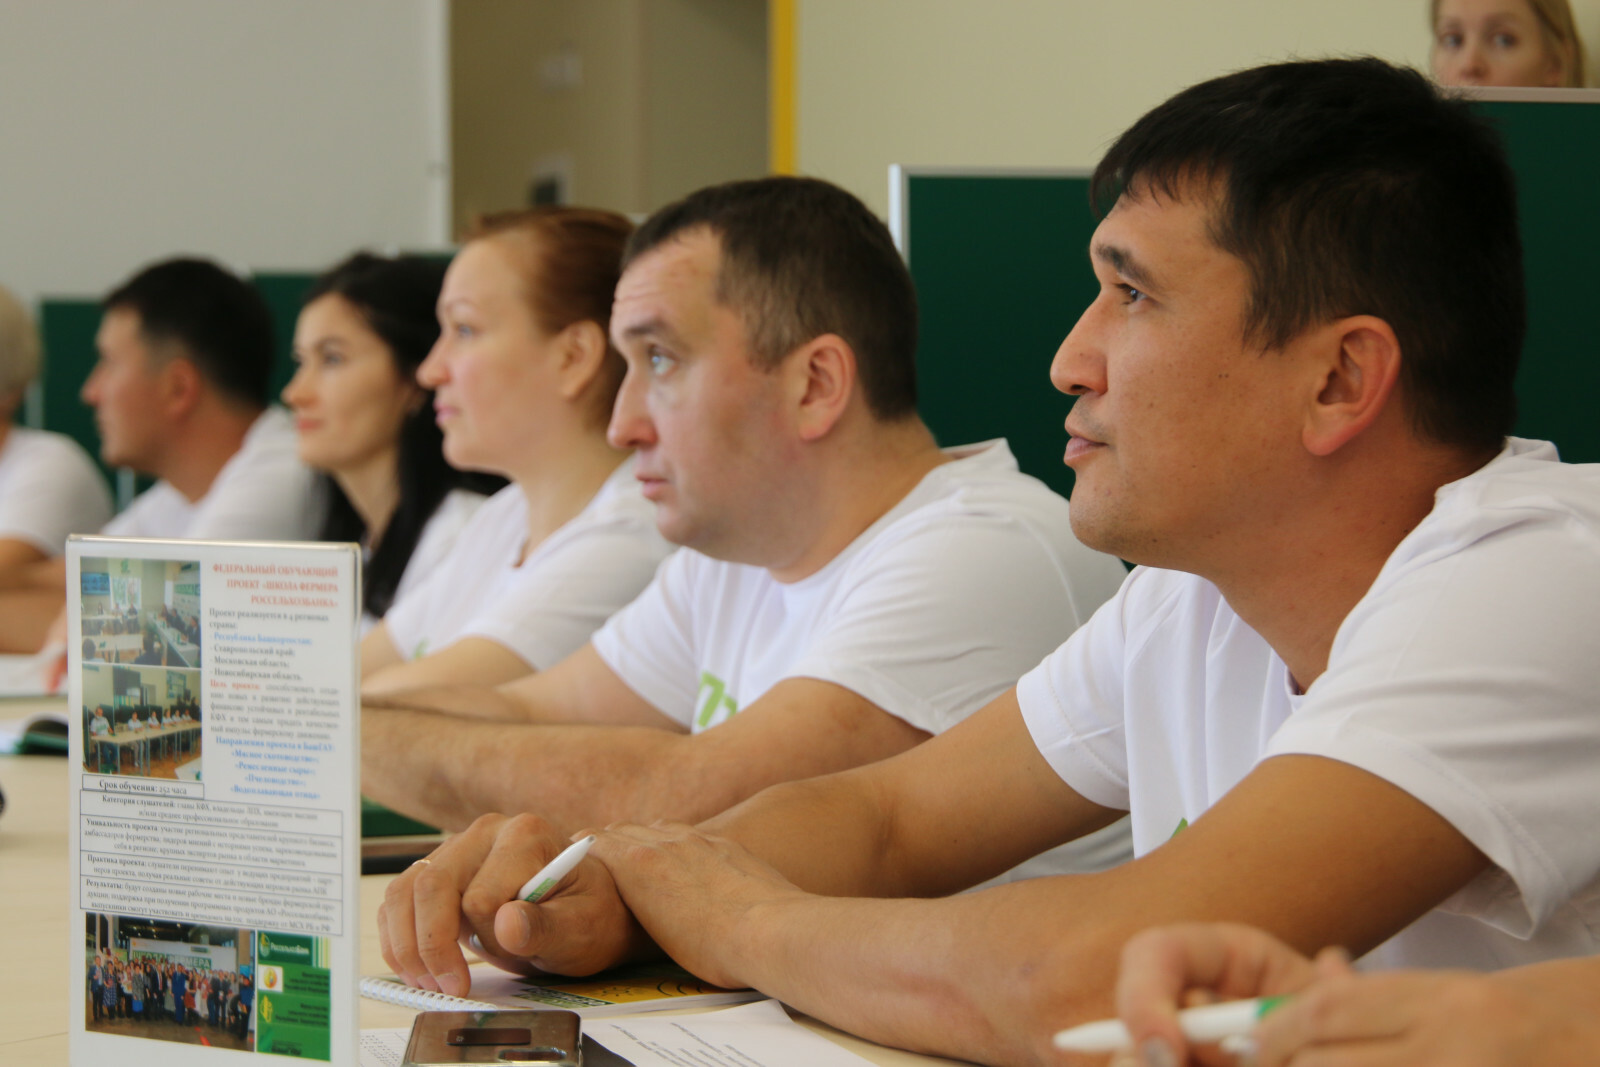 В Башкортостане пройдёт седьмой поток «Школы фермера»